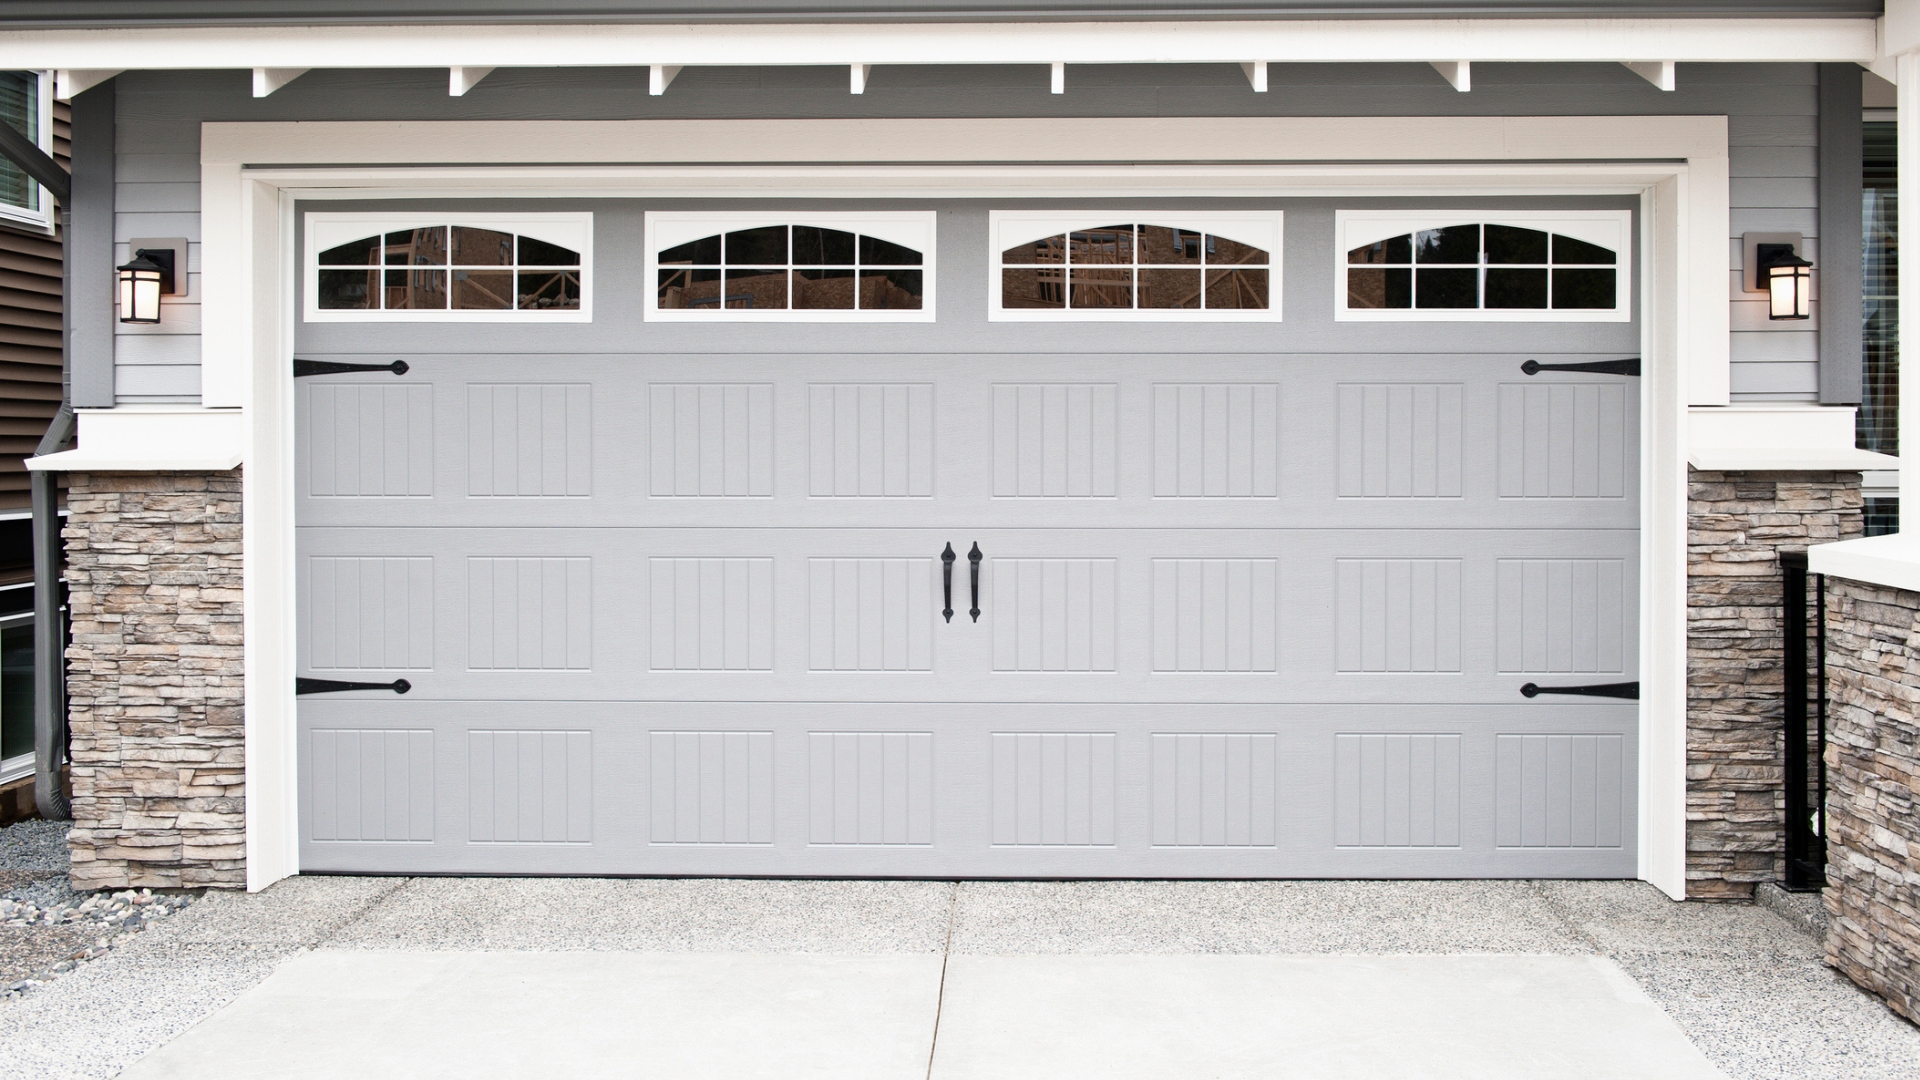 Garage door window tint enhances the garage door's curb appeal